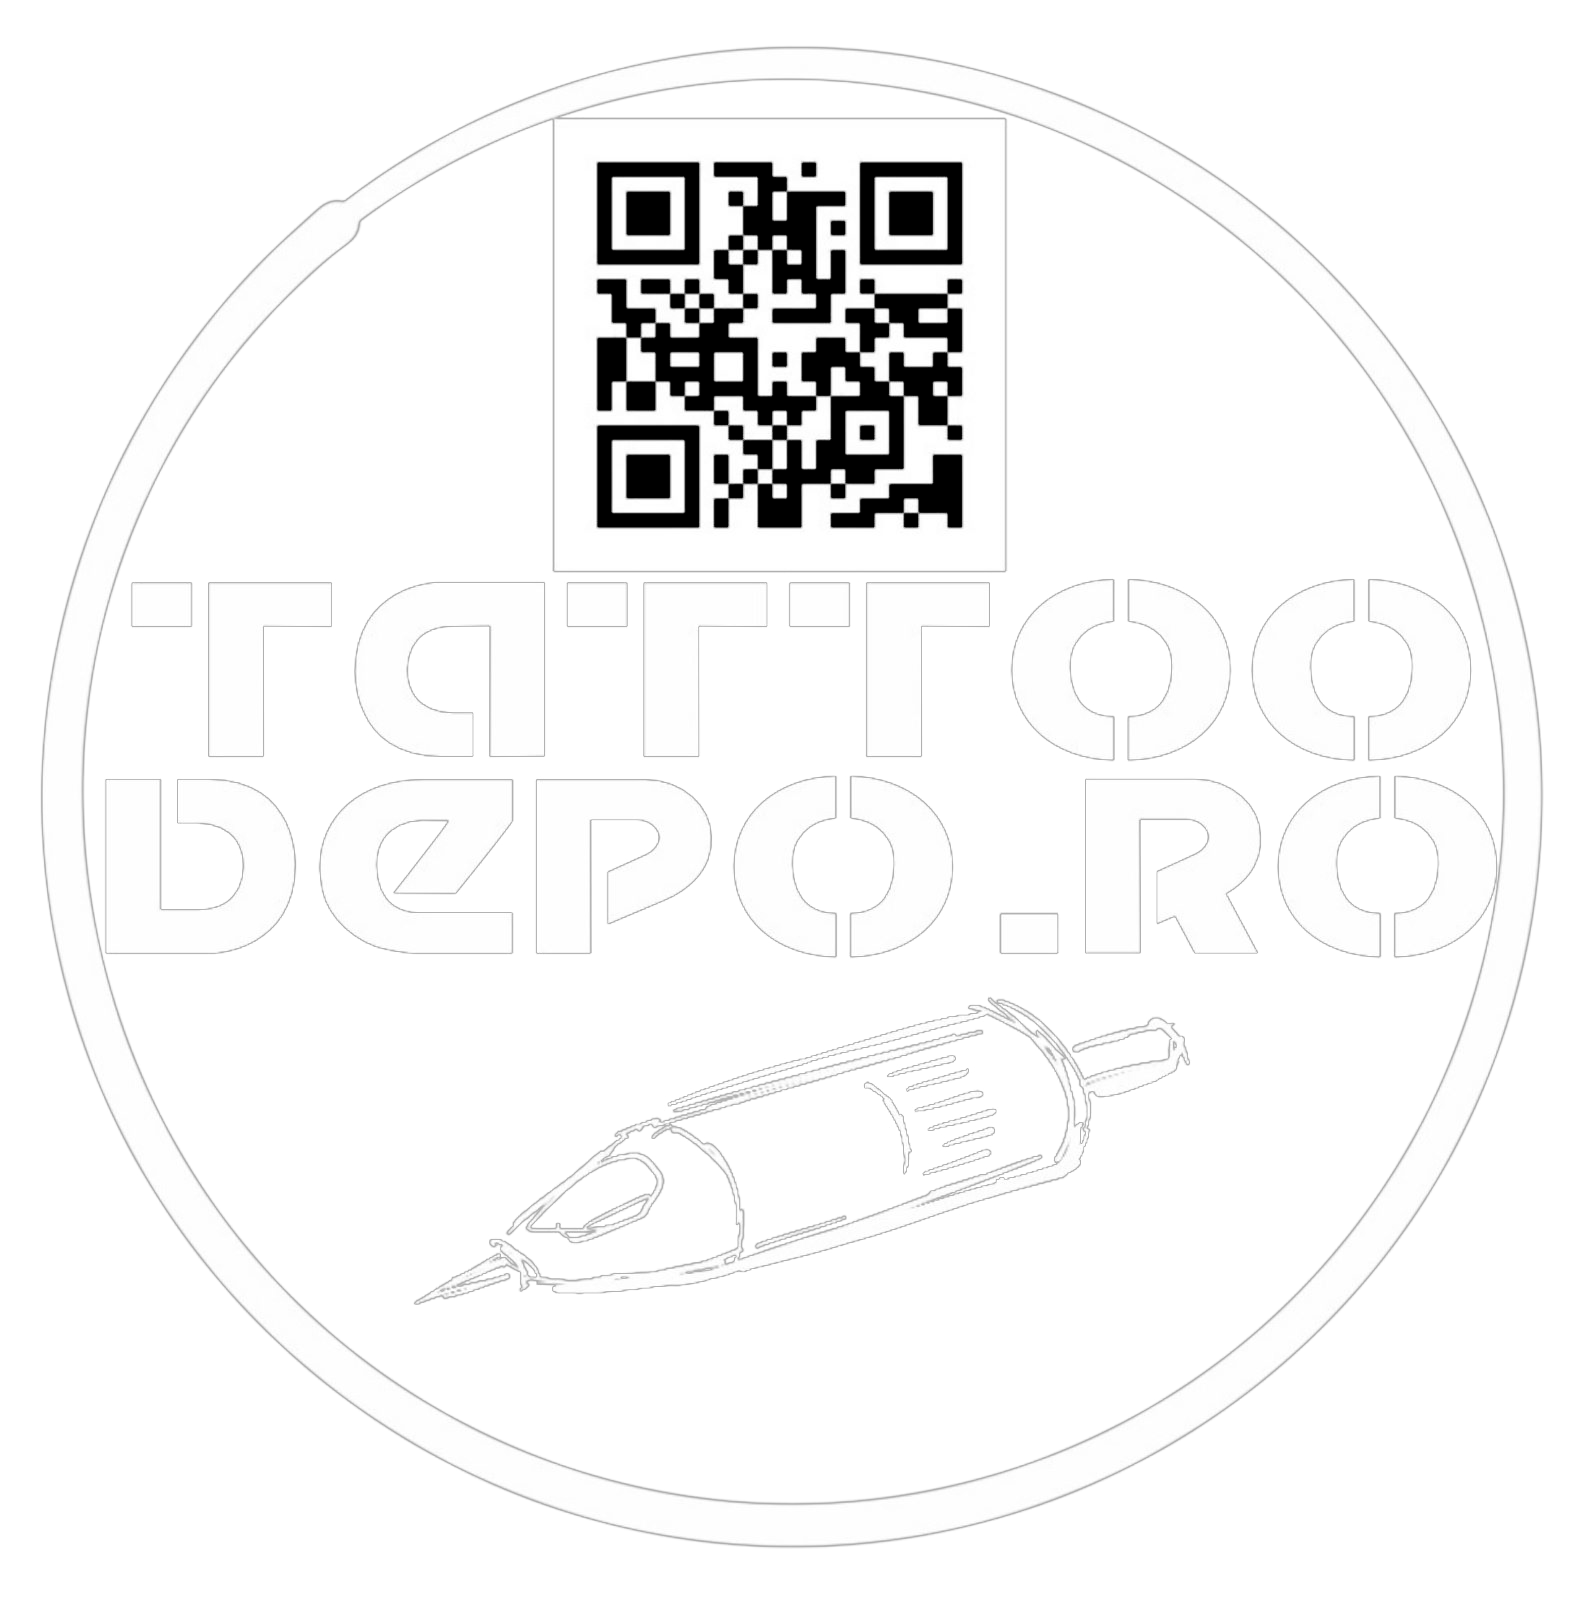 suport de ace cartus tatuaj,suport de ace cartus,suport de ace cartuș,tattoo cartridge cup holder,20Pcs/Box Tattoo Cartridge Cup Holder